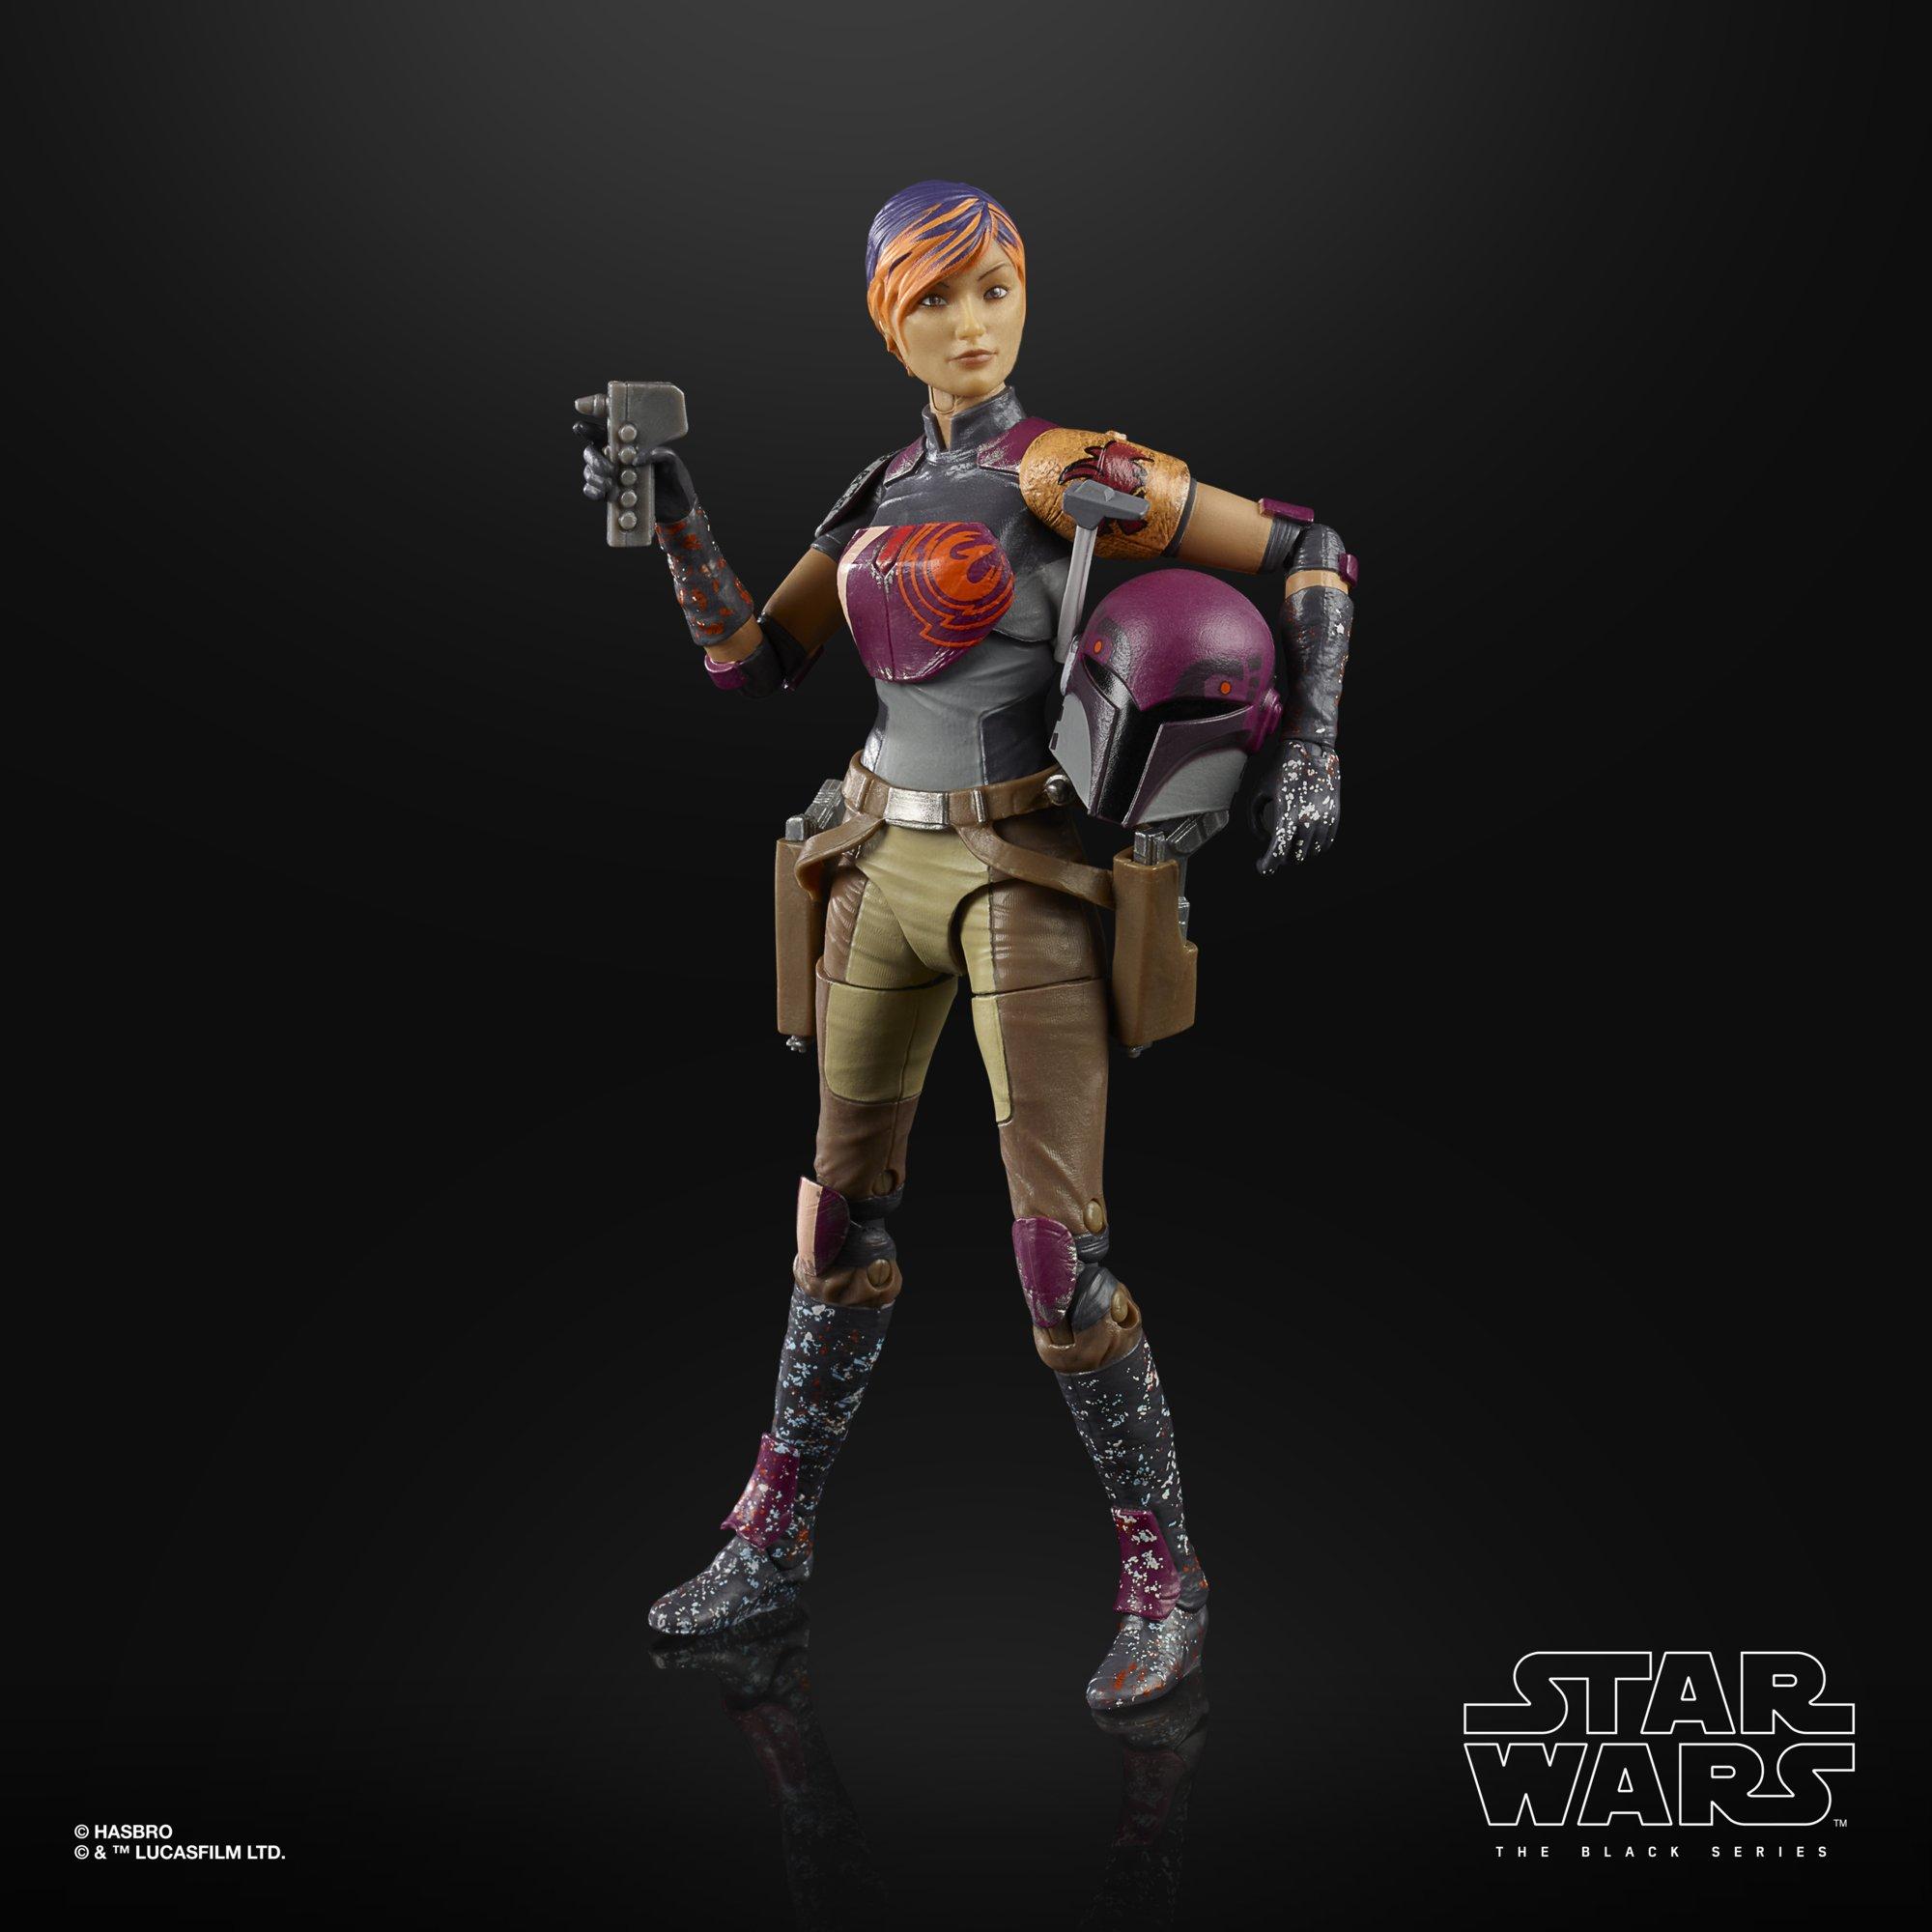 Star Wars Rebels Sabine Wren The Black Series Action Figure Gamestop - sabine wren roblox hat accesory